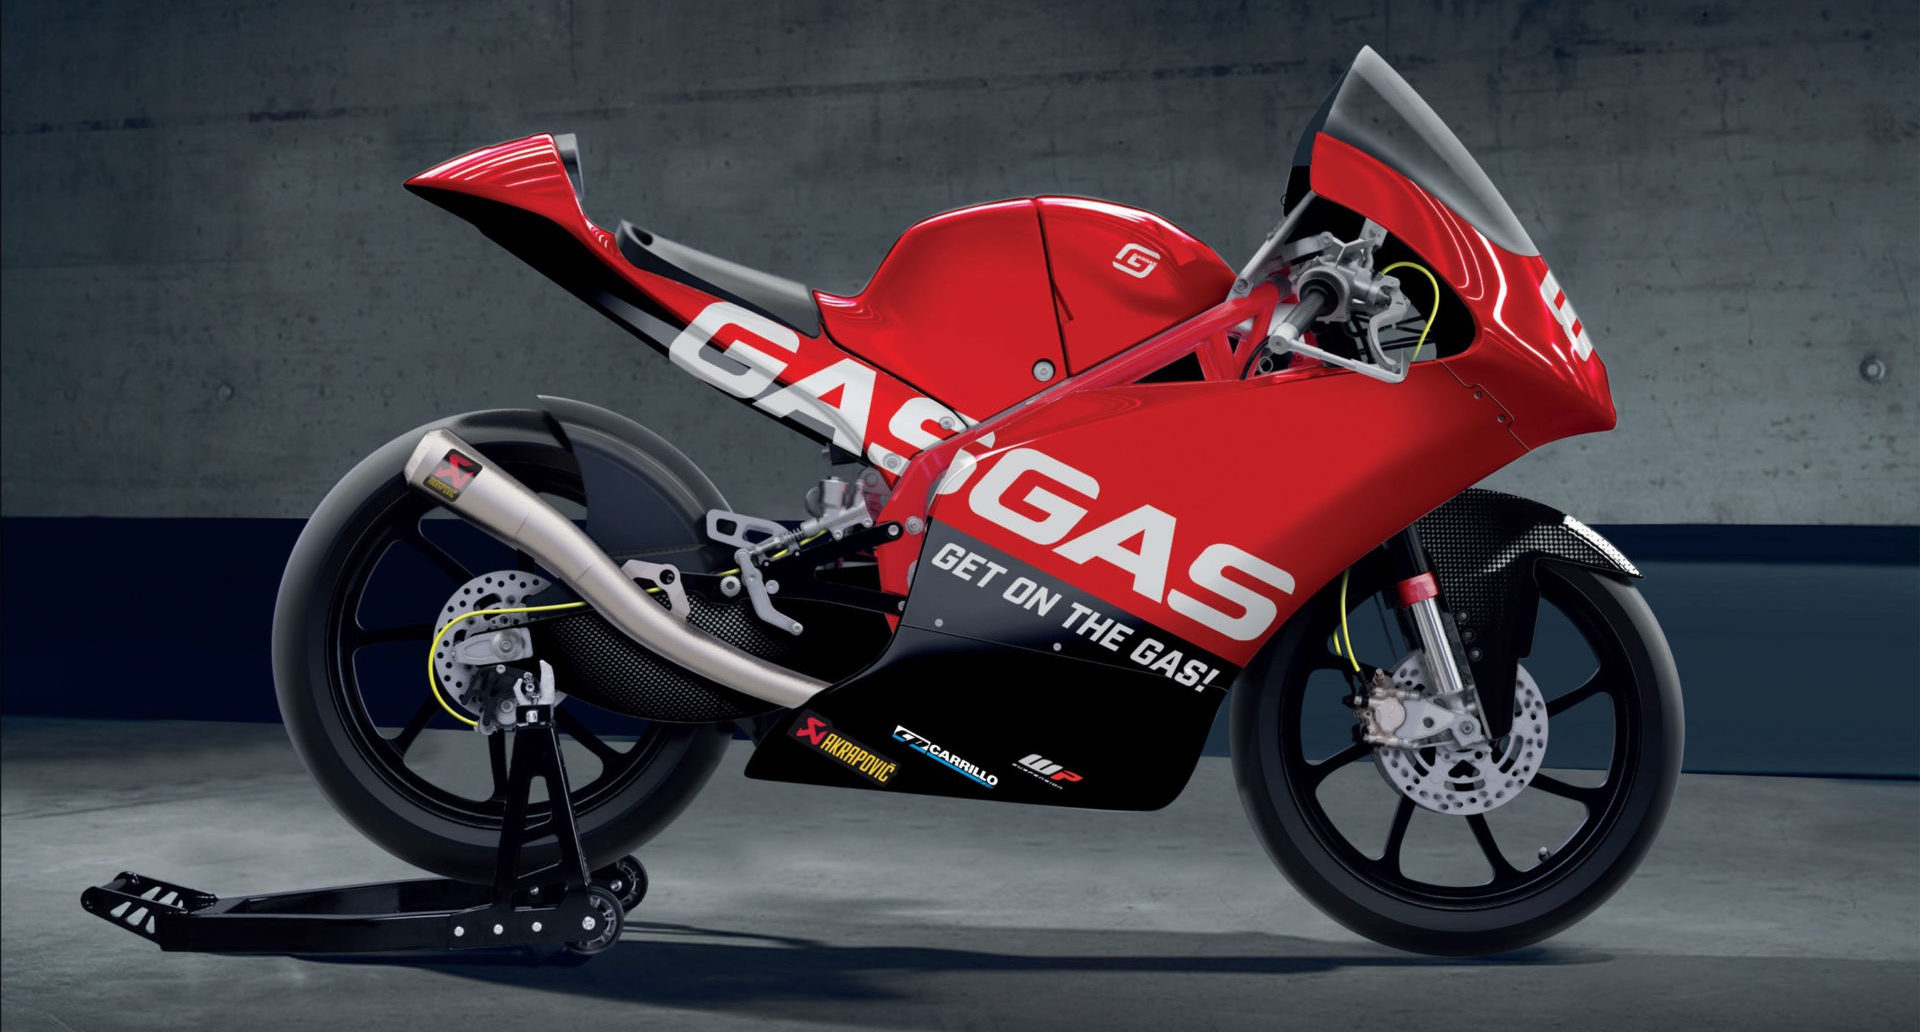 A GASGAS RC 250 GP road racing motorcycle. Photo courtesy GASGAS Motorcycles.